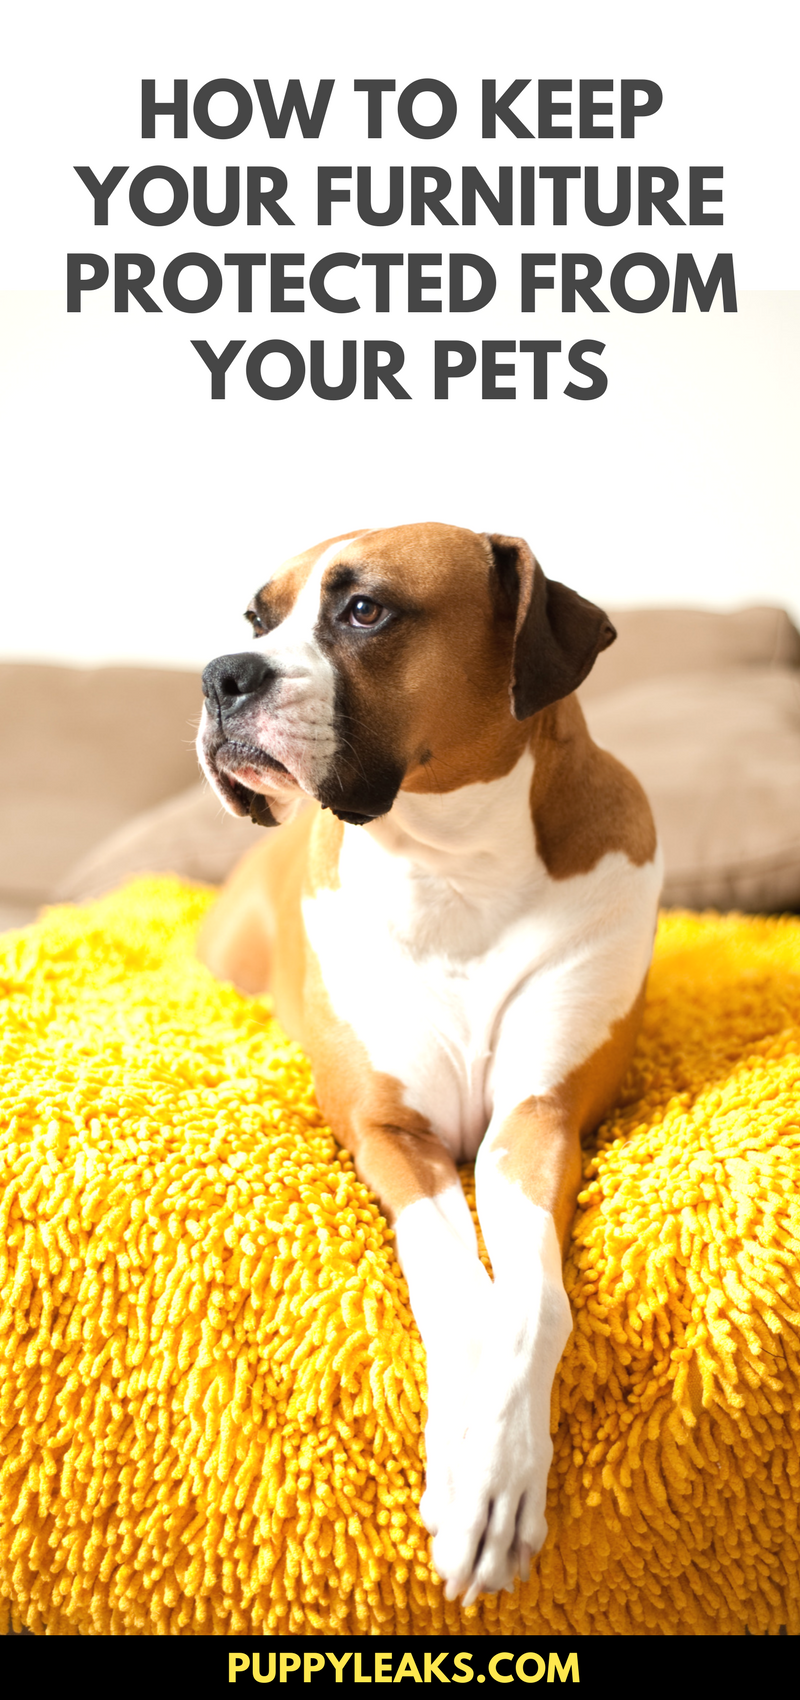 あなたの家具を犬に証明する10の簡単な方法 